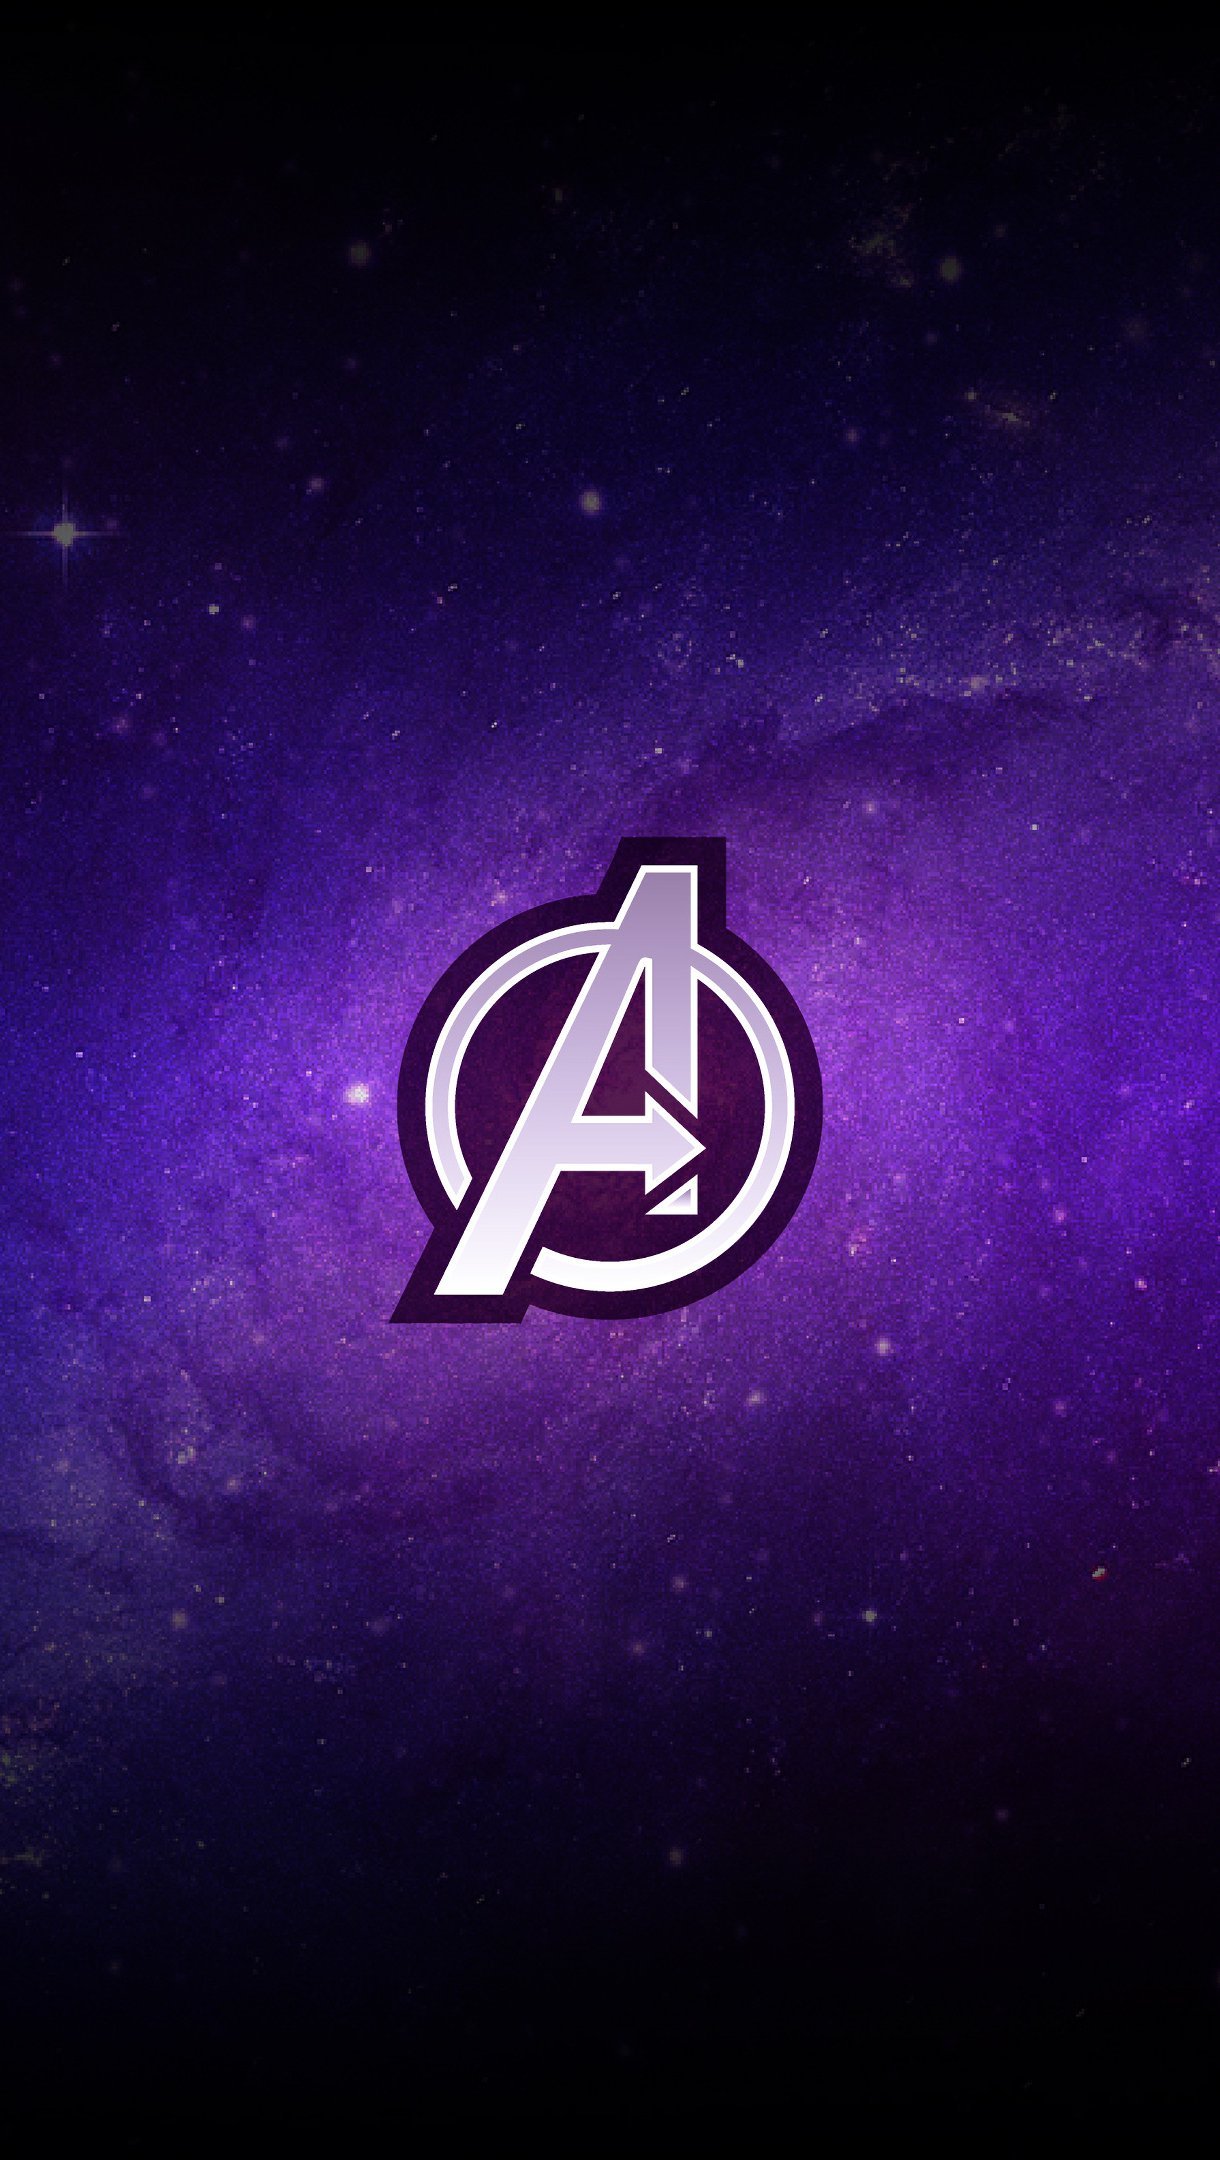 Fondos de pantalla Logo Avengers Endgame Vertical